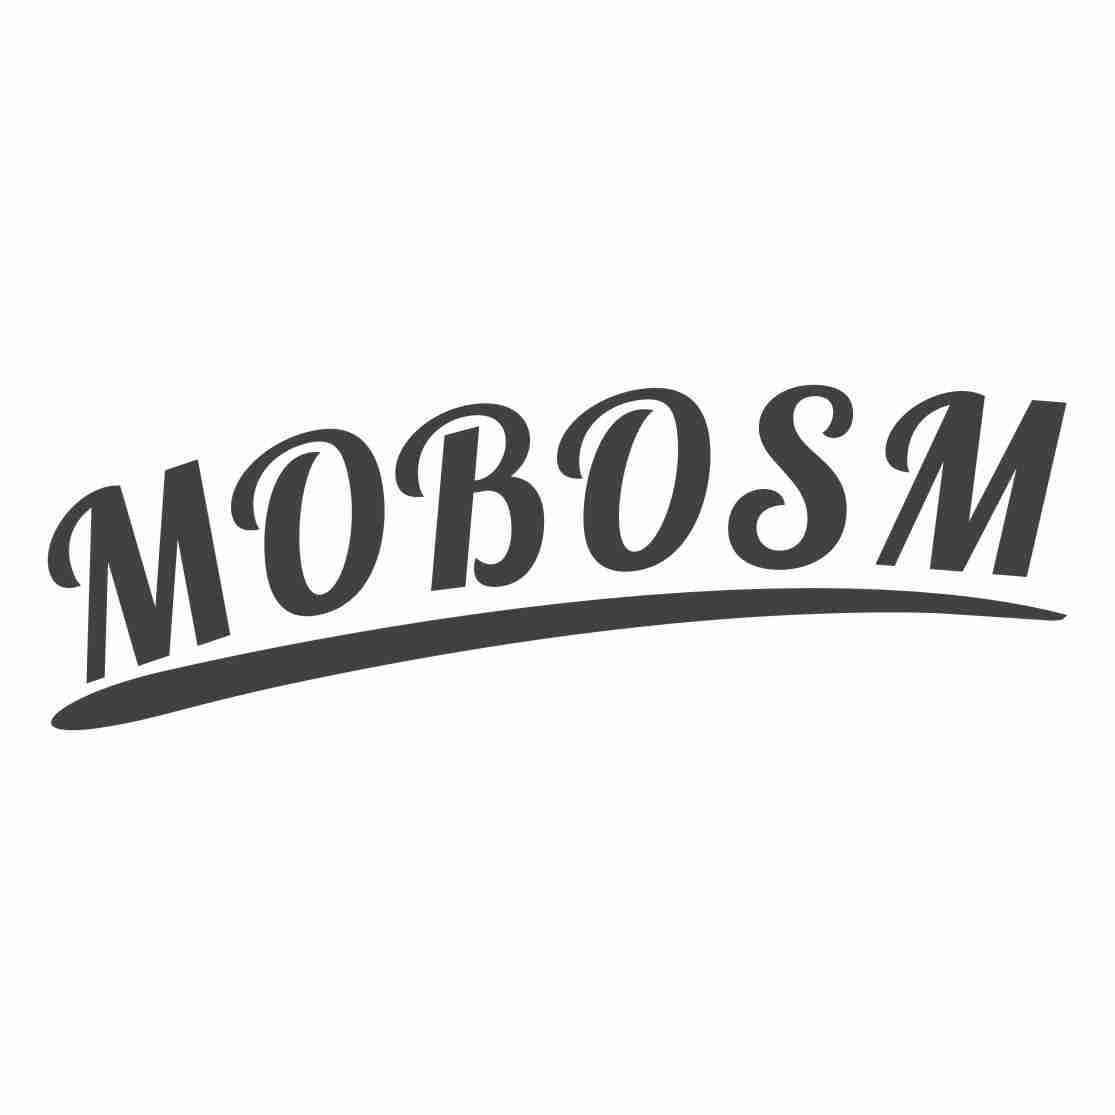 25类-服装鞋帽MOBOSM商标转让